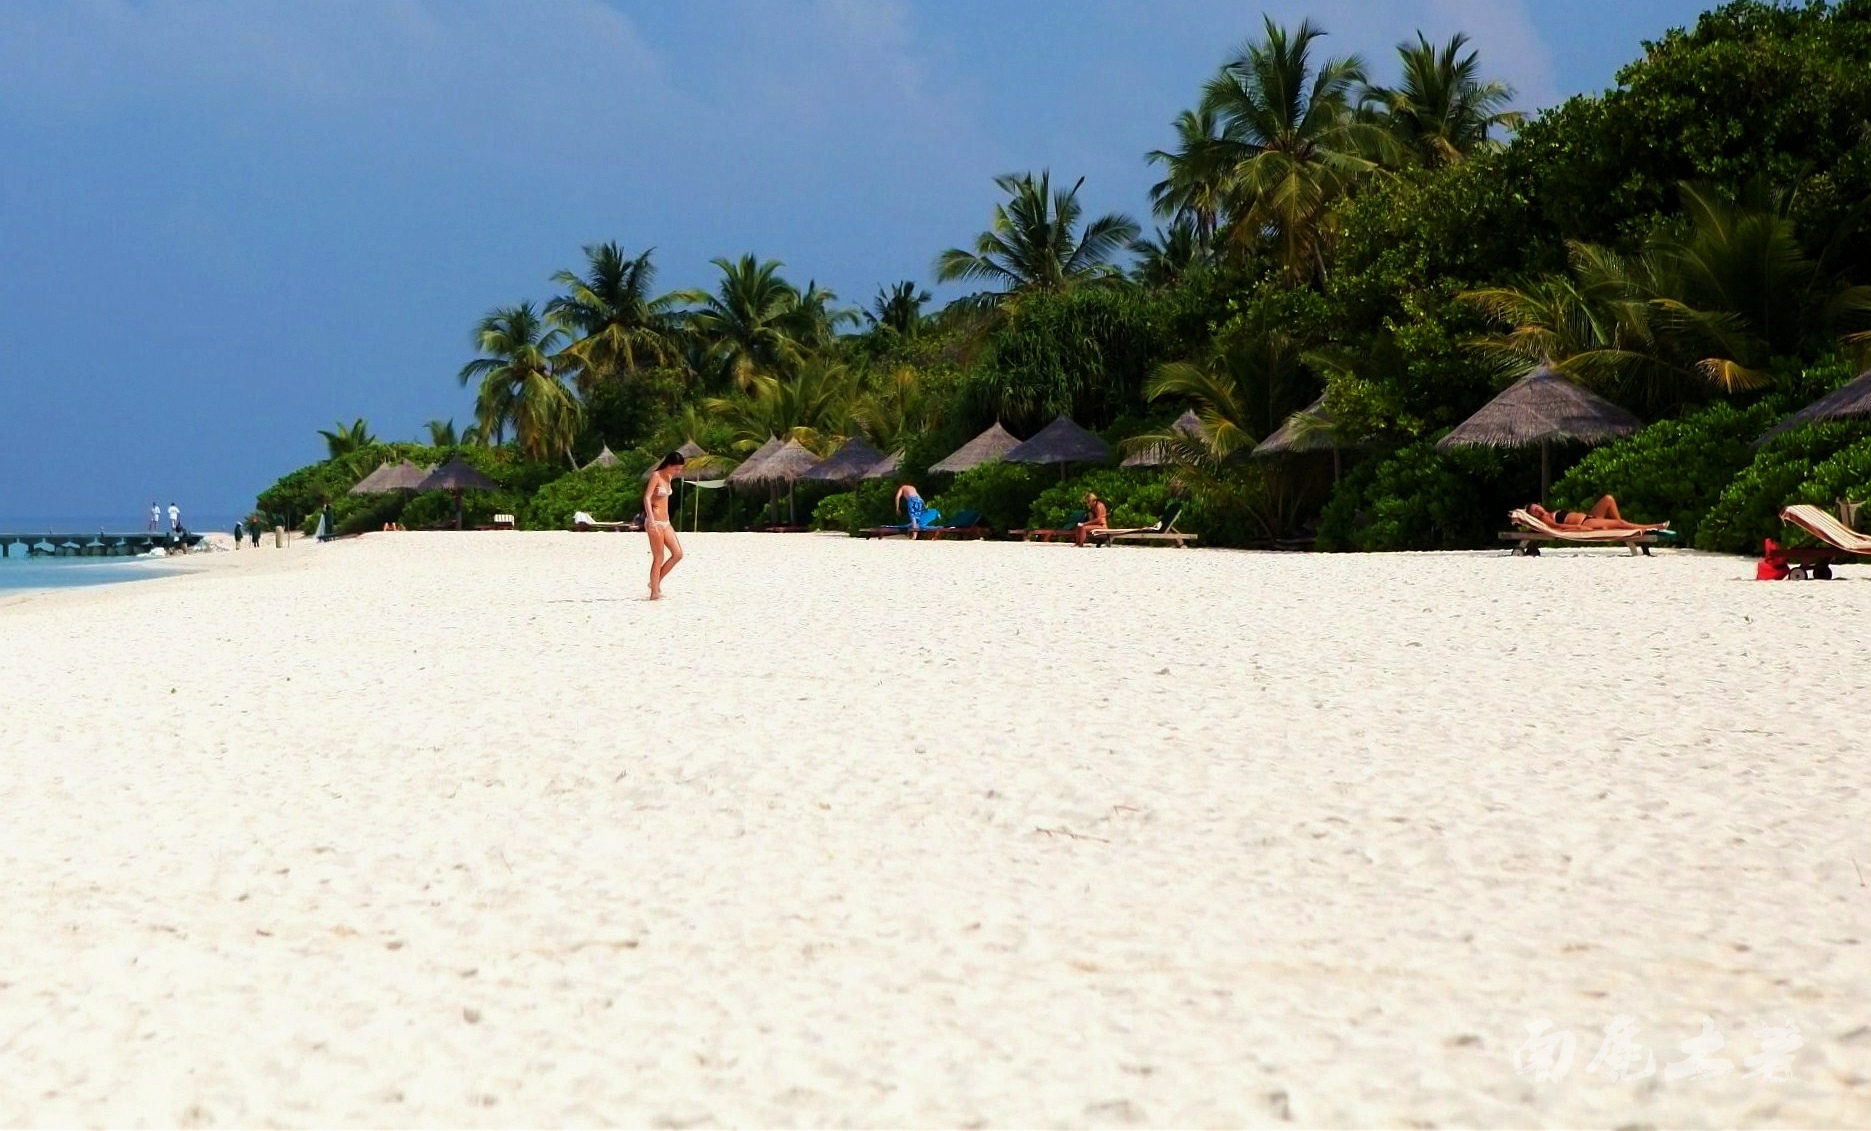 艾美酒店()|马尔代夫,攻略(图片,天气,浮潜,沙滩),岛屿游记,代理价格-海岸线官网